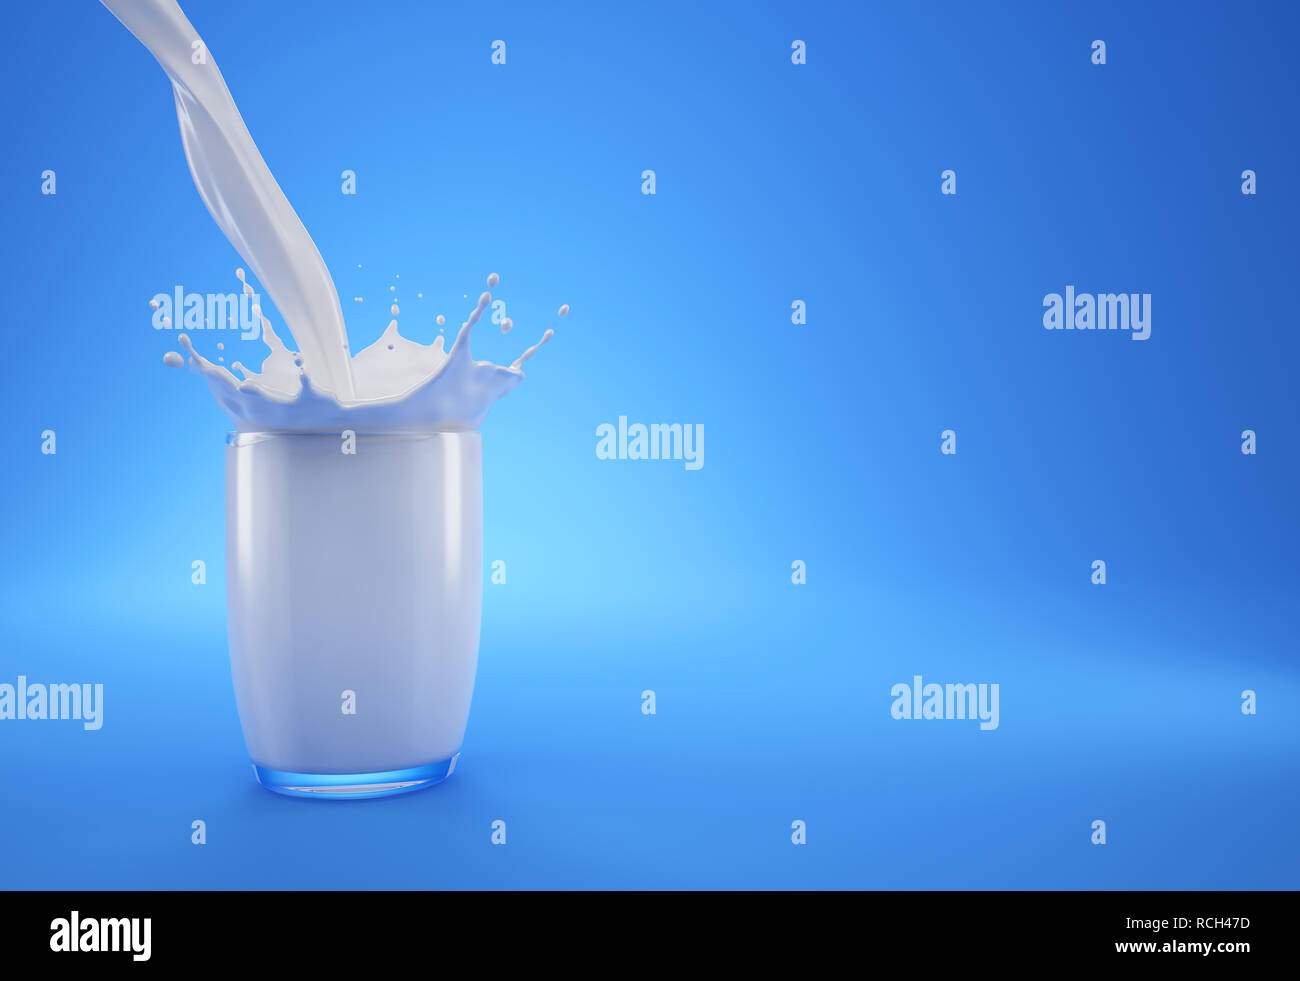 Verser le lait dans un verre rempli de lait avec couronne splash. Sur fond bleu. Avec l'espace libre d'un côté pour ajouter du texte. Banque D'Images